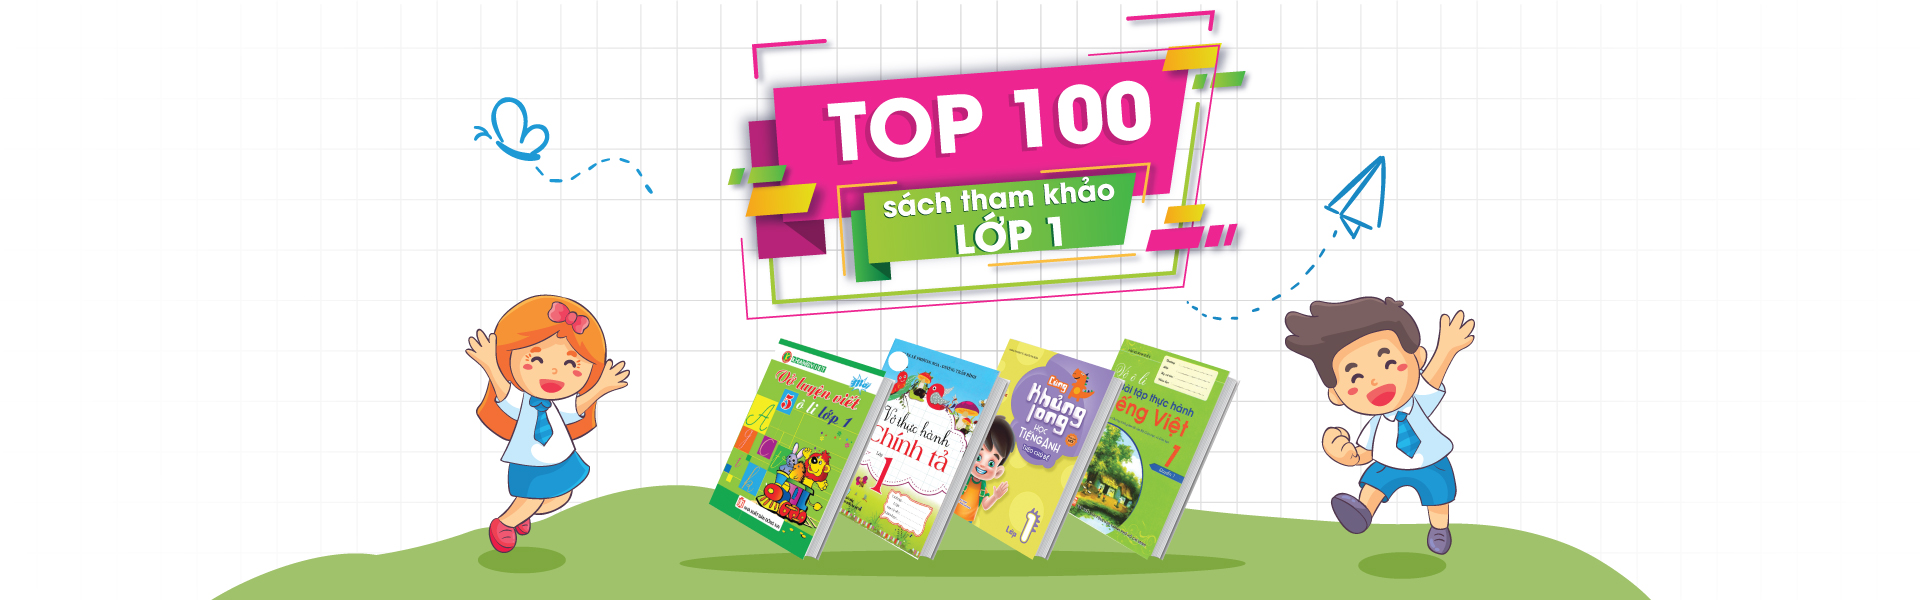 TOP 100 Sách Tham Khảo Lớp 1 Bán Chạy Nhất Tại Newshop